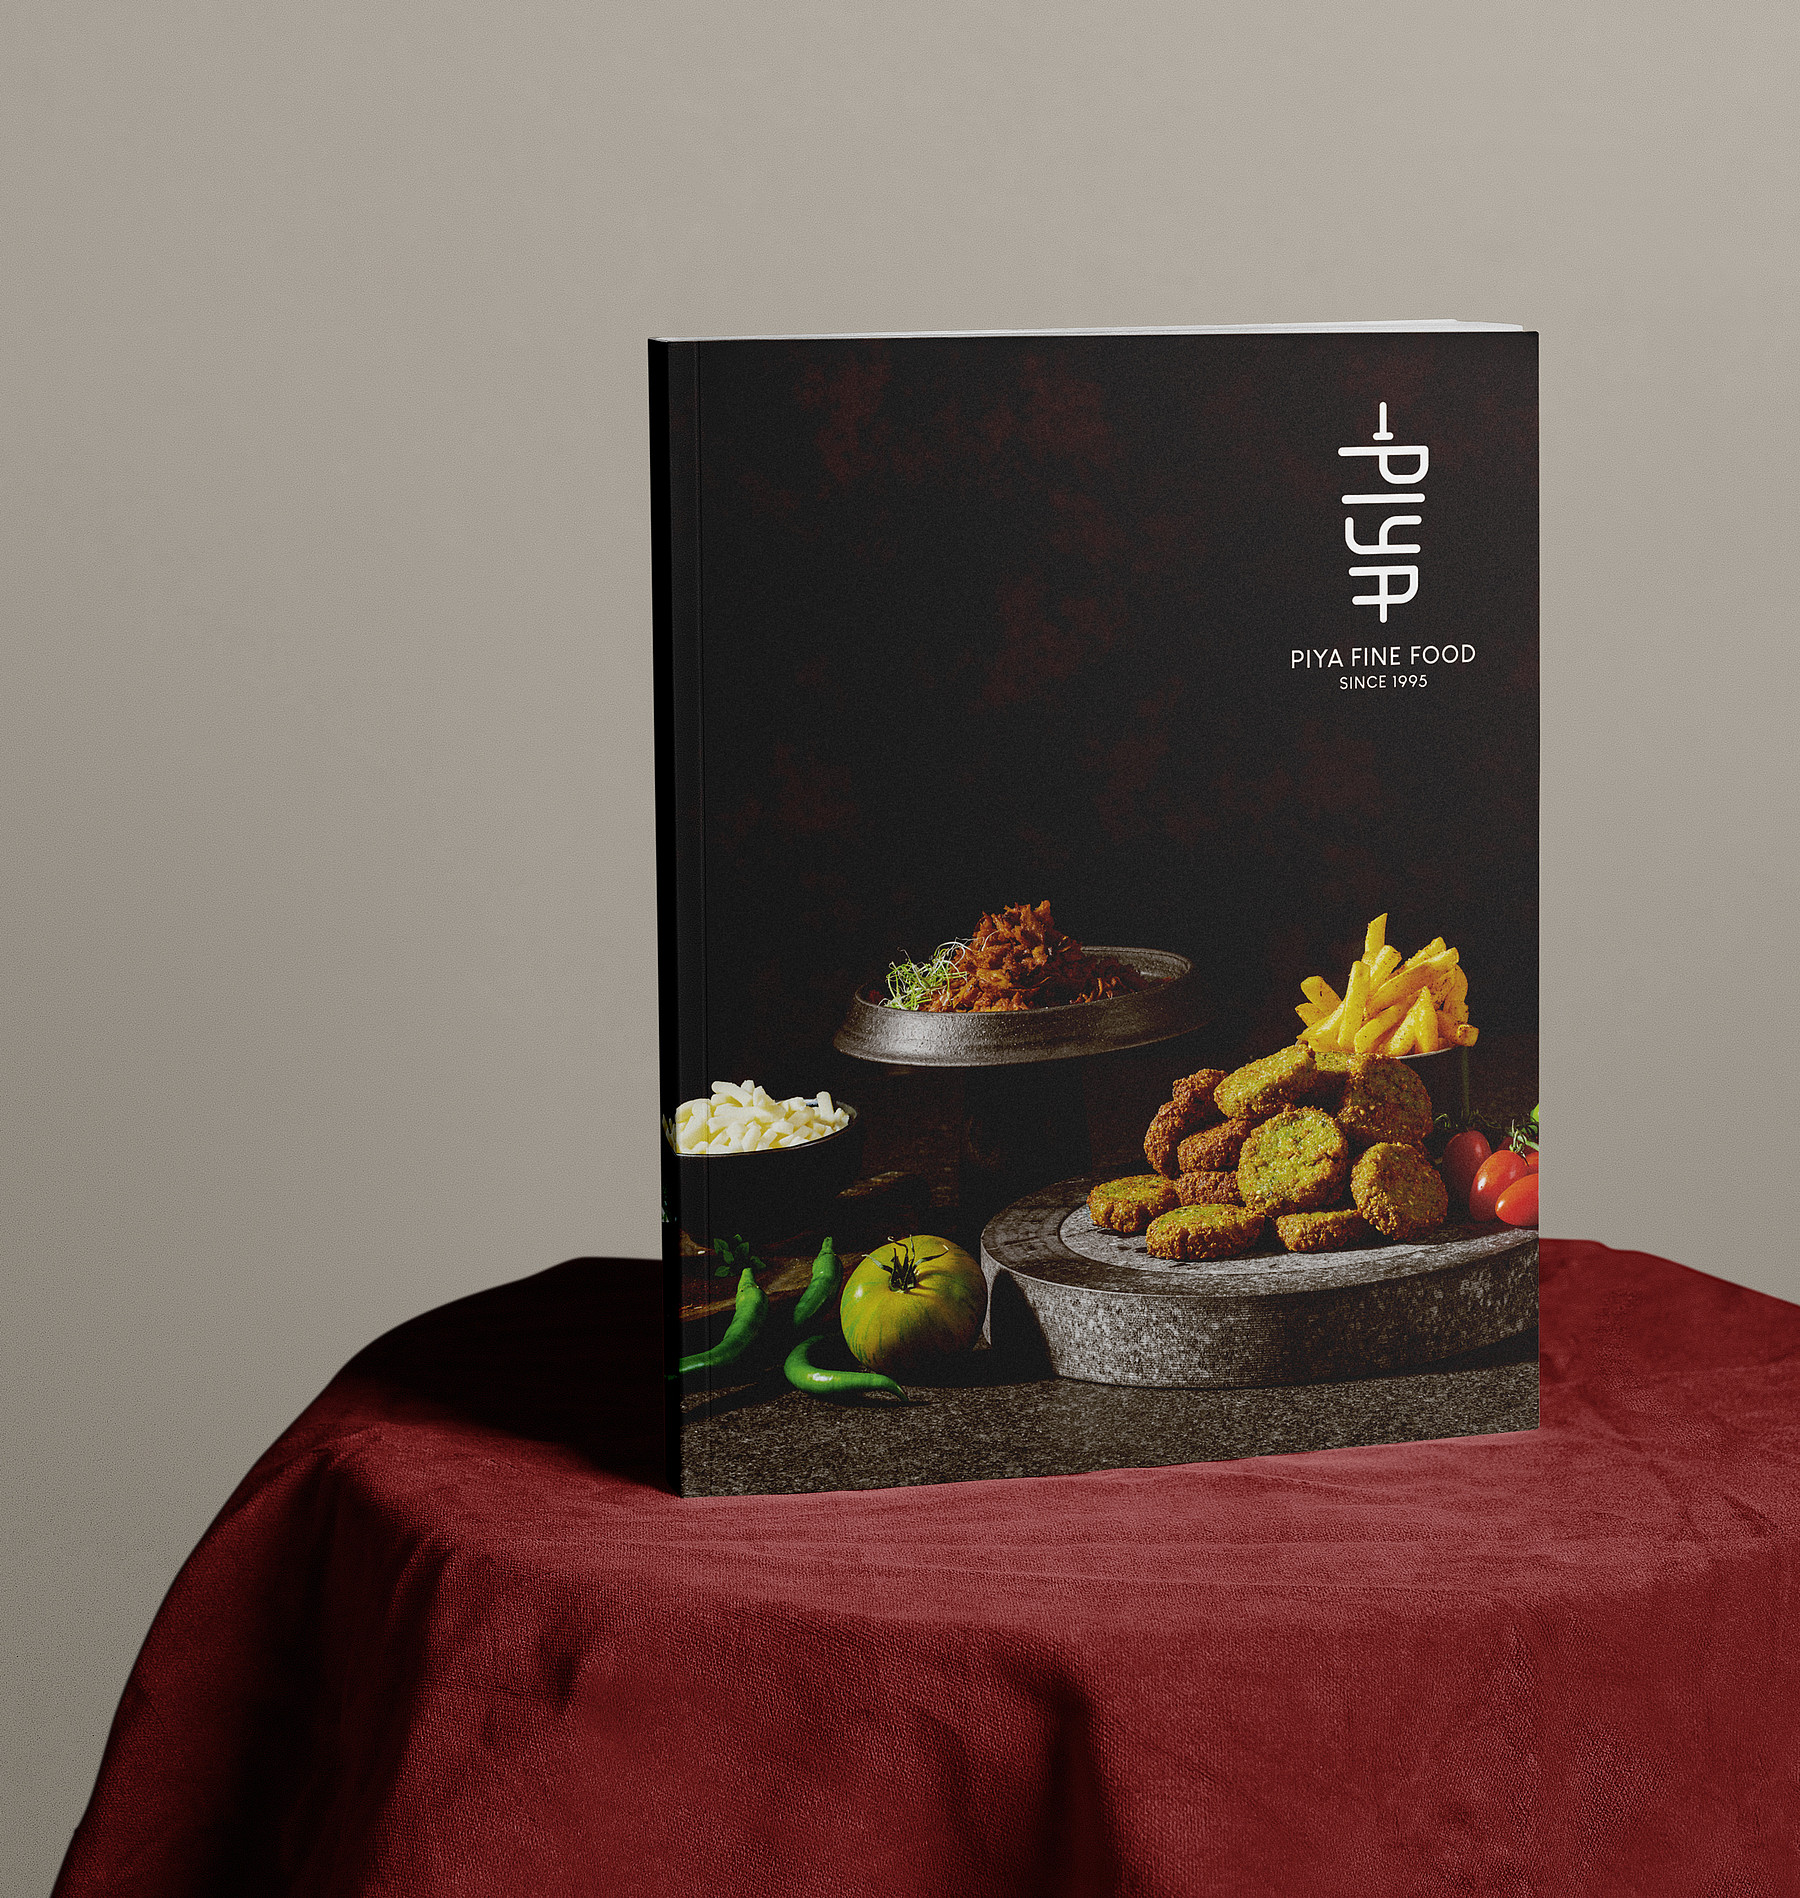 Die elegant schwarz gehaltene Broschüre «PIYA Fine Food since 1995» präsentiert auf einem Tischchen mit rotem Tischtuch.